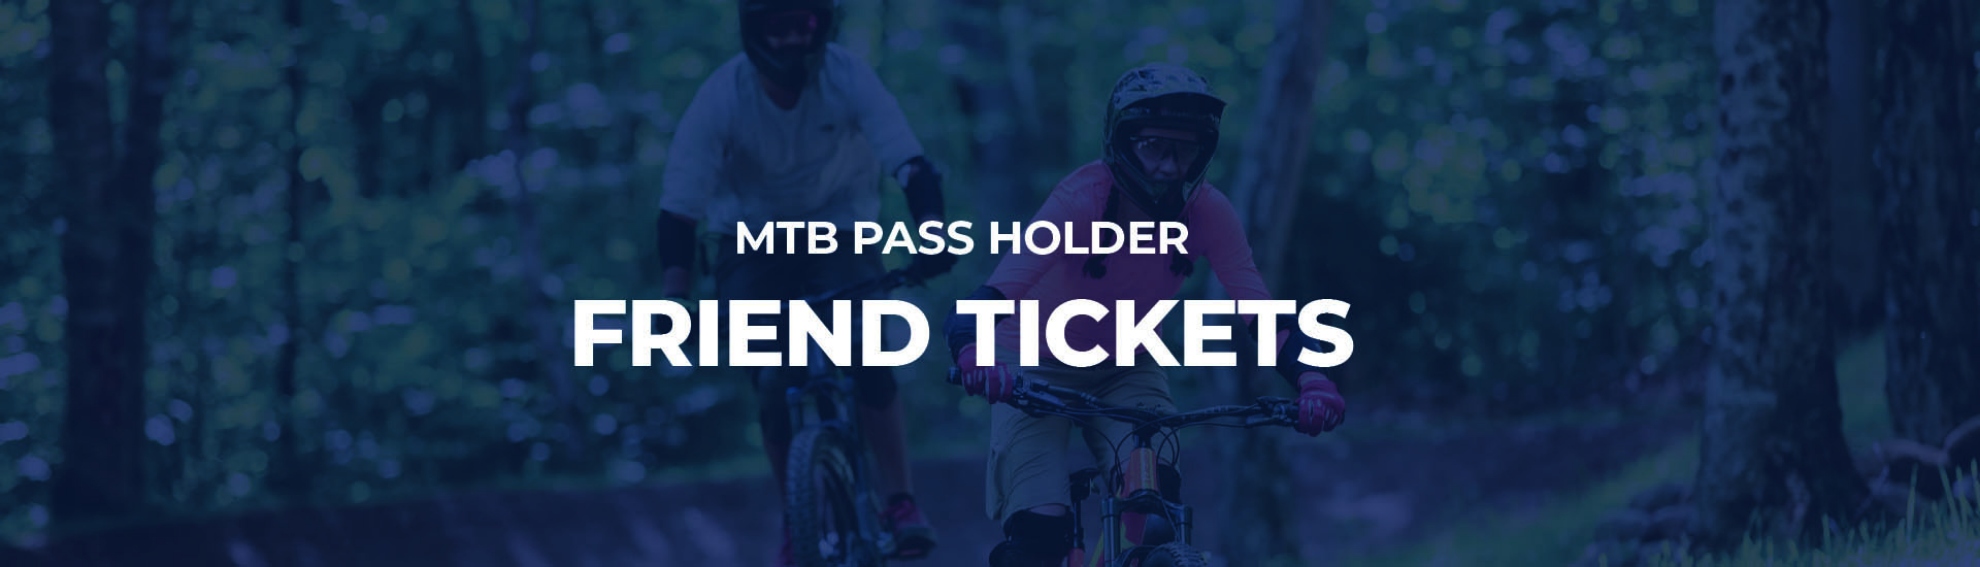 Pass Holder MTB Friend Tickets